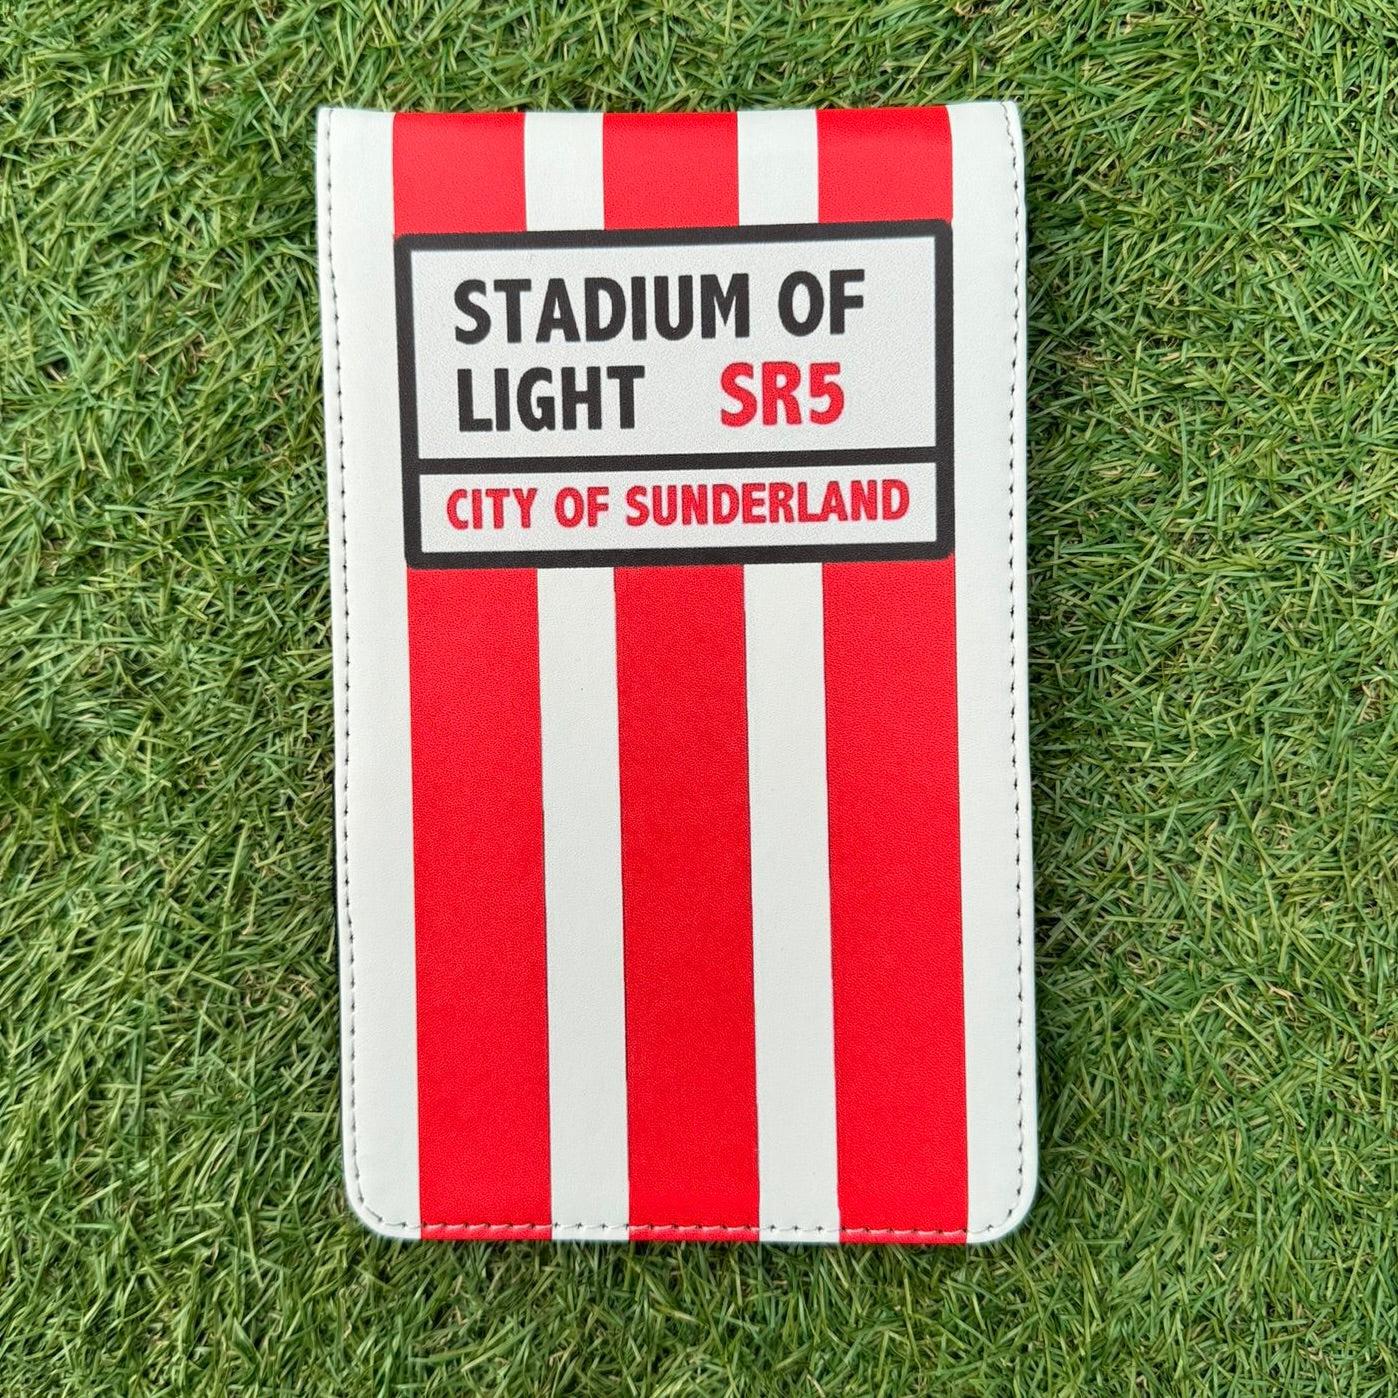 Sunderland (Stadium of light) Scorecard Holder